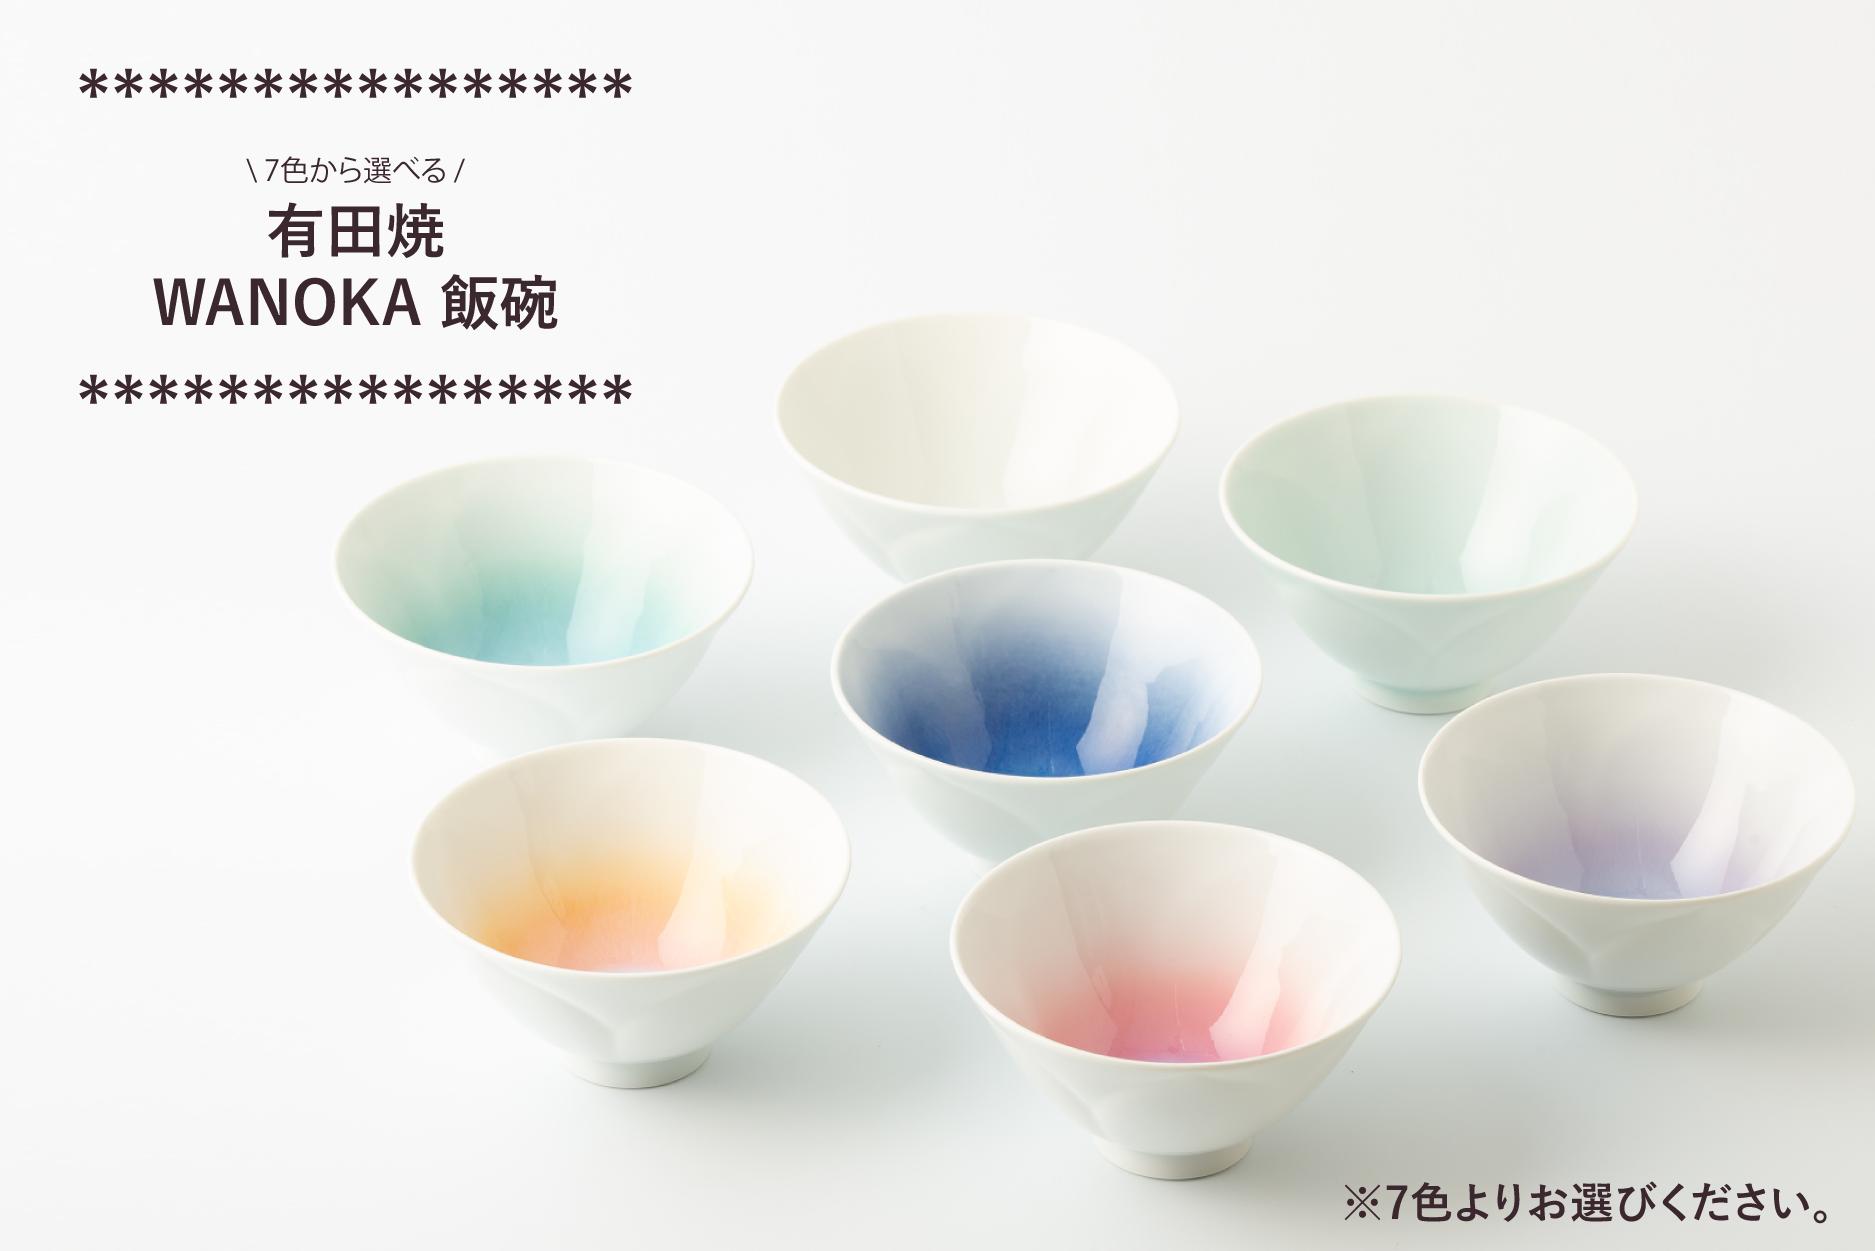 
有田焼 藤巻製陶 WANOKA飯碗 (※7色からお選びください。) 玉有
